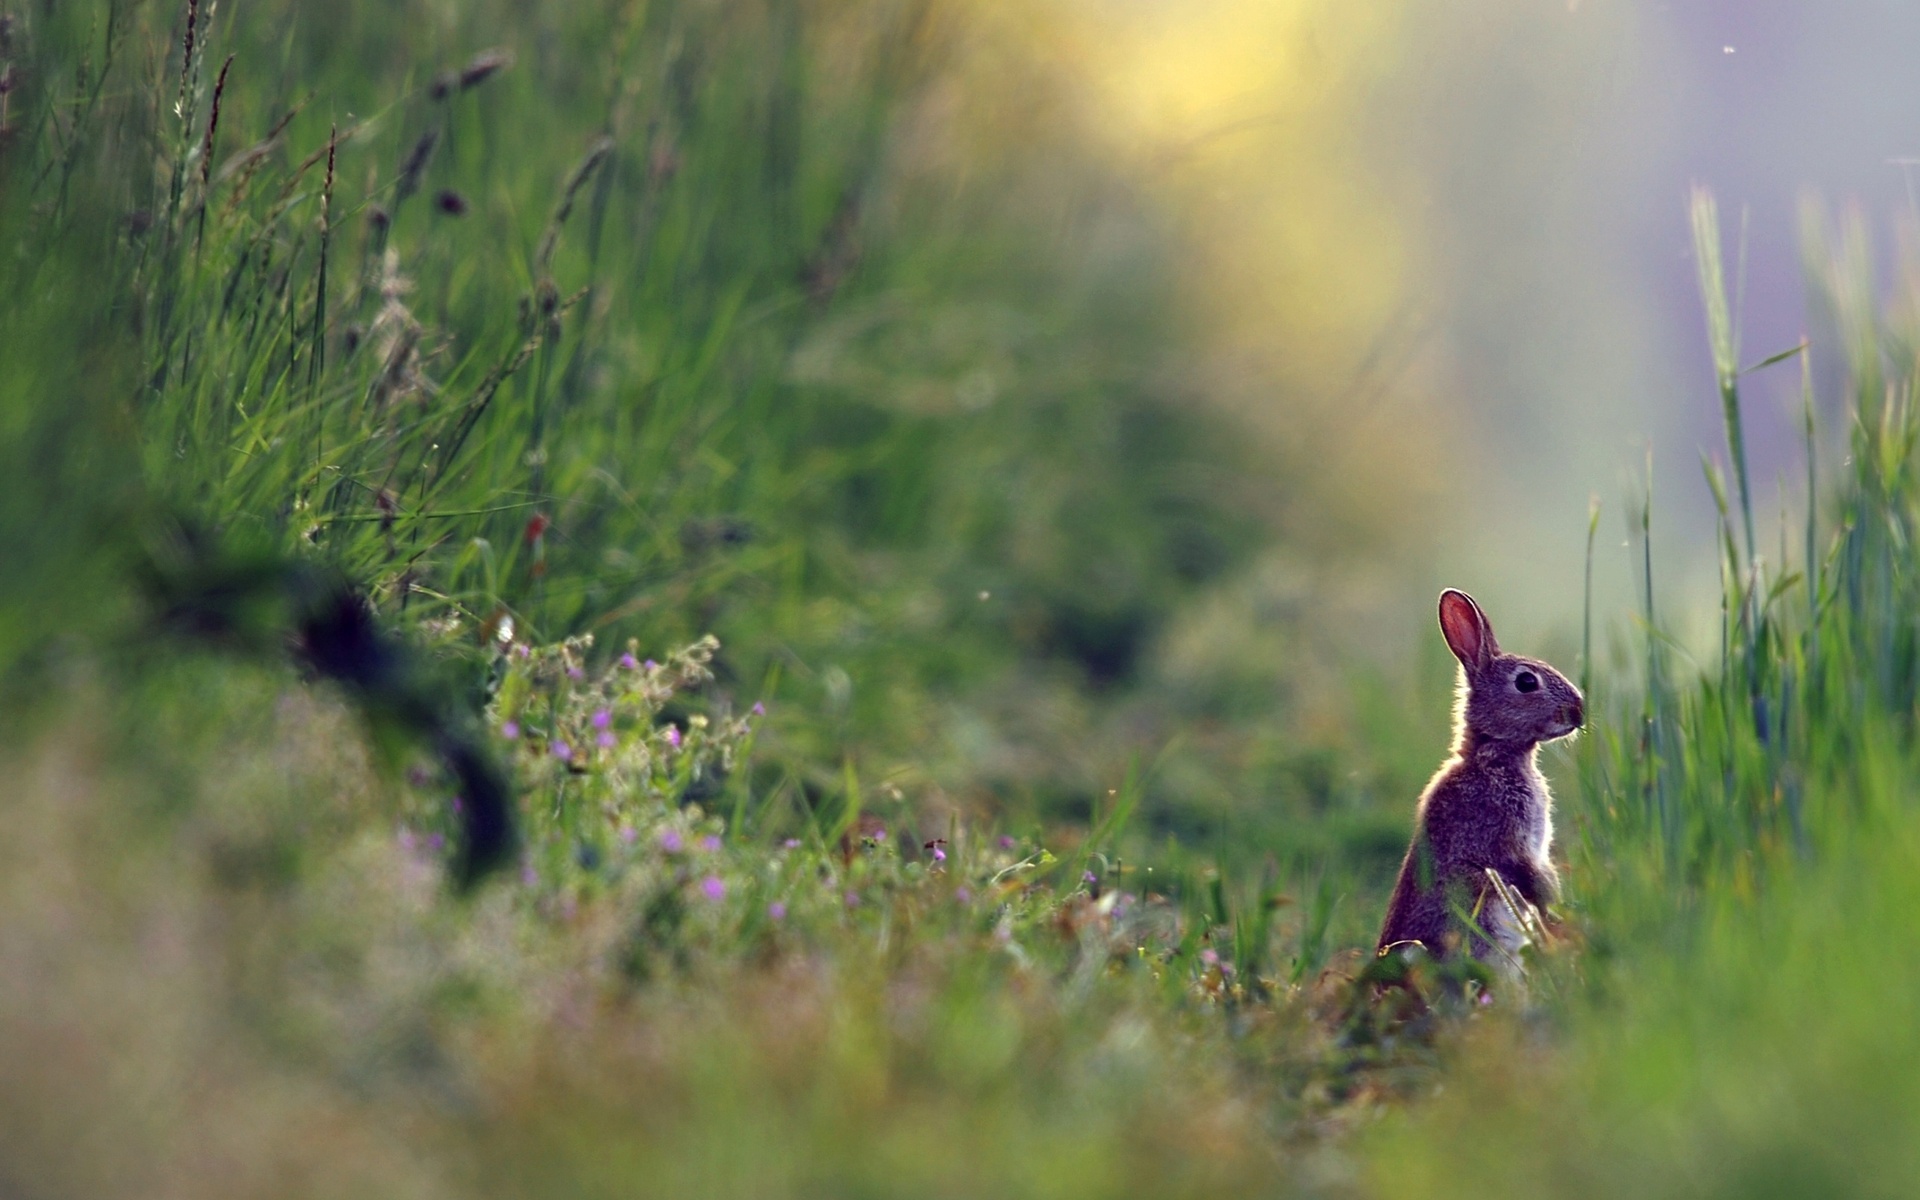 Descarga gratis la imagen Animales, Conejo en el escritorio de tu PC